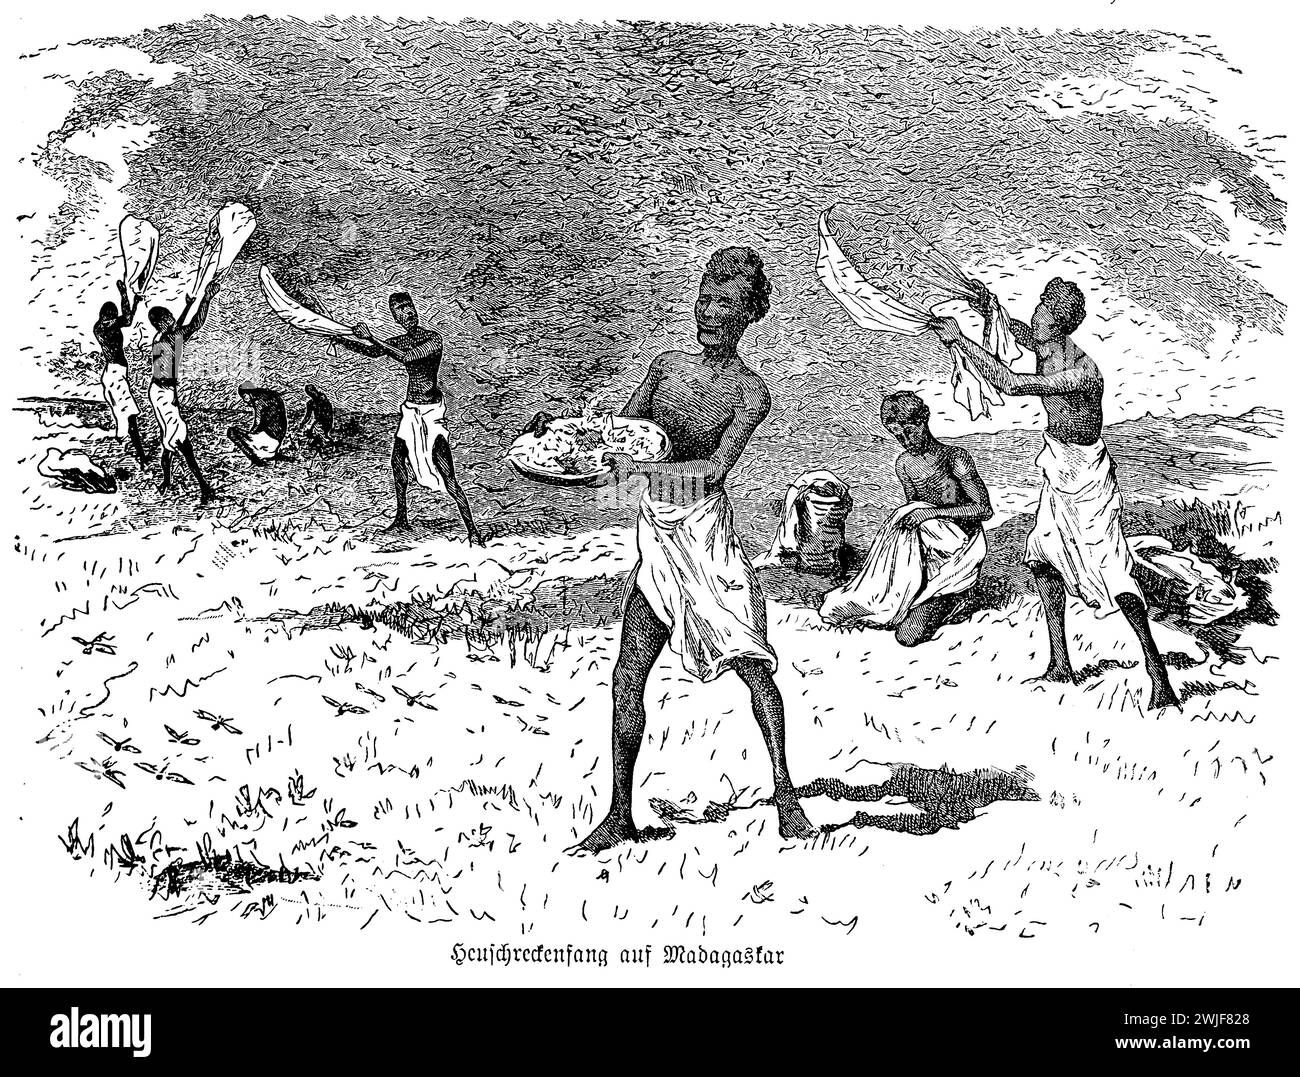 Prise de sauterelles à Madagascar, illustration du XIXe siècle Banque D'Images